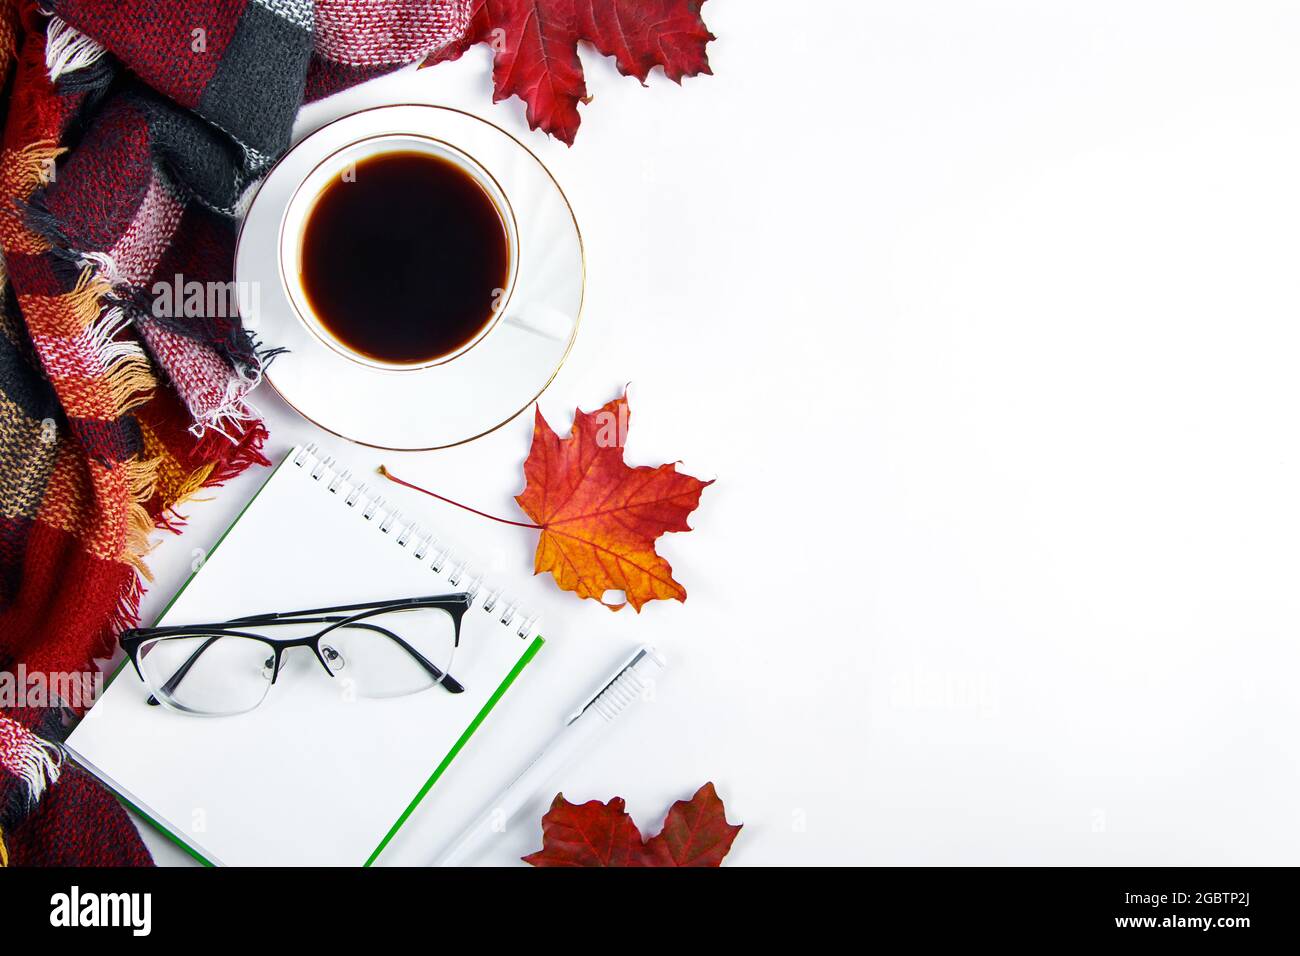 Concept Hello Autumn. Tasse de café expresso chaud et feuilles rouges tombées sur fond blanc. Un écossais chaud et une boisson chaude par temps froid. Copier l'espace. Banque D'Images